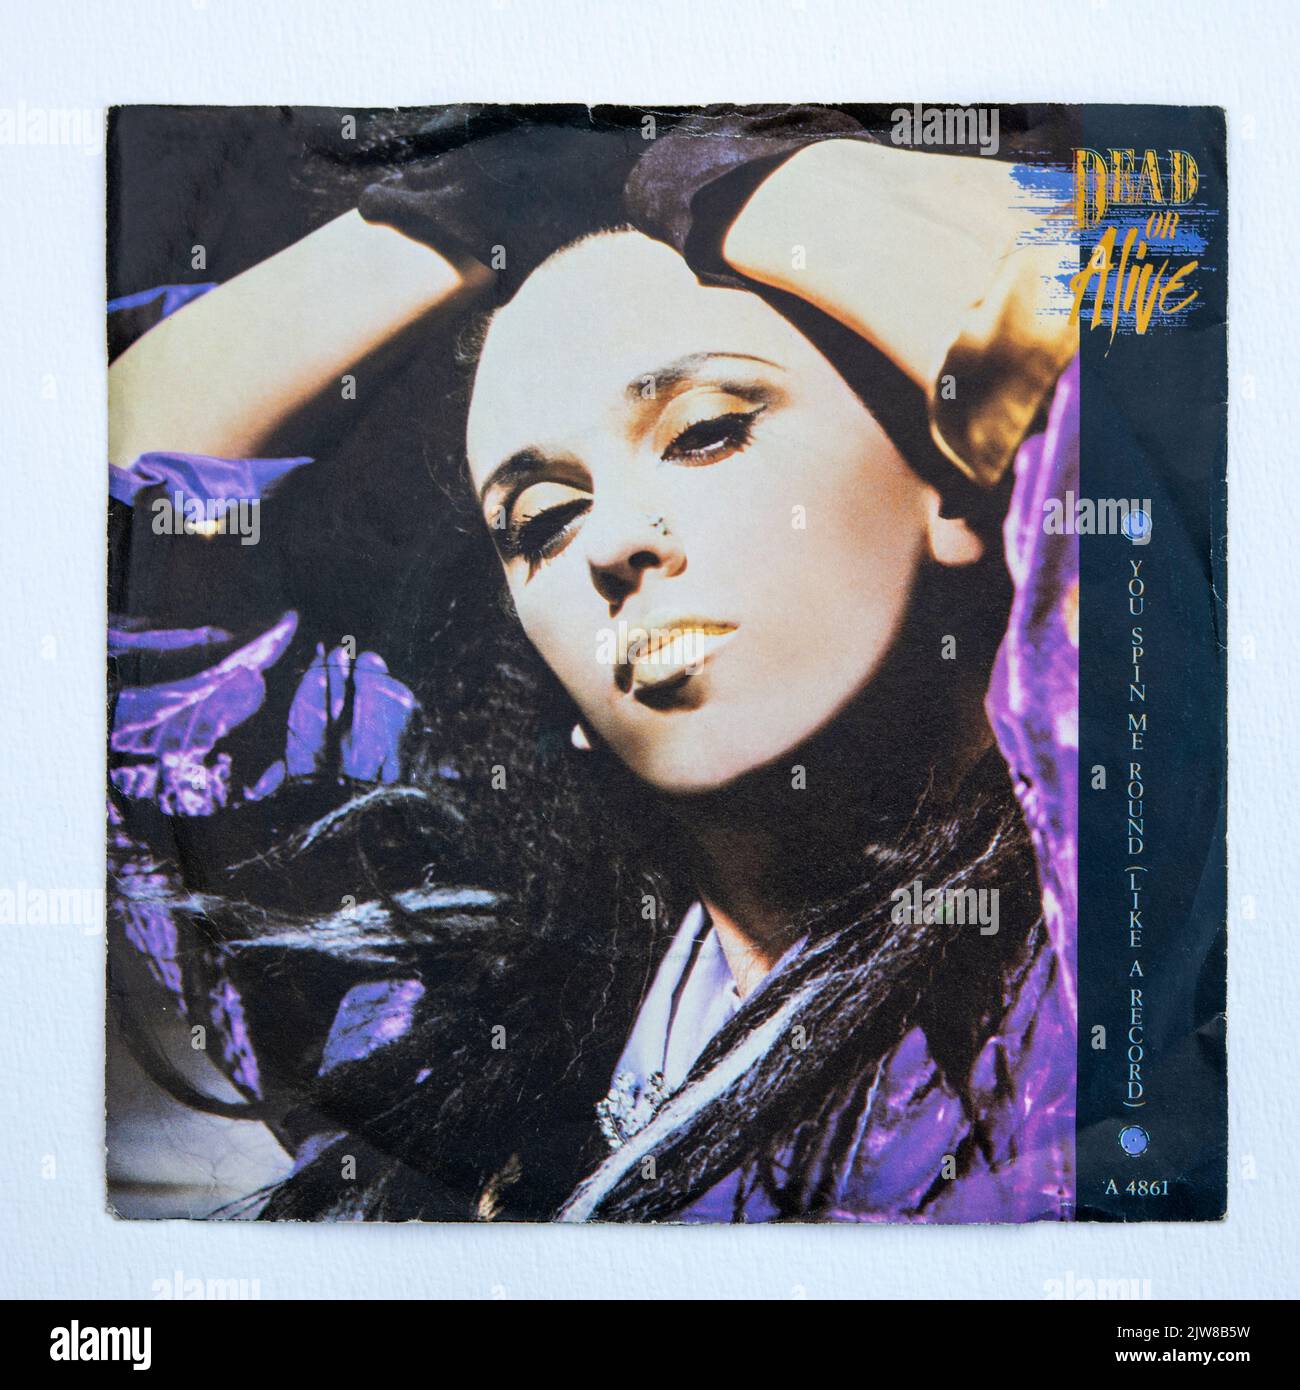 Bildercover der sieben-Zoll-Single-Version von You Spin Me Round (Like A Record) von Dead or Alive, die 1985 veröffentlicht wurde. Stockfoto